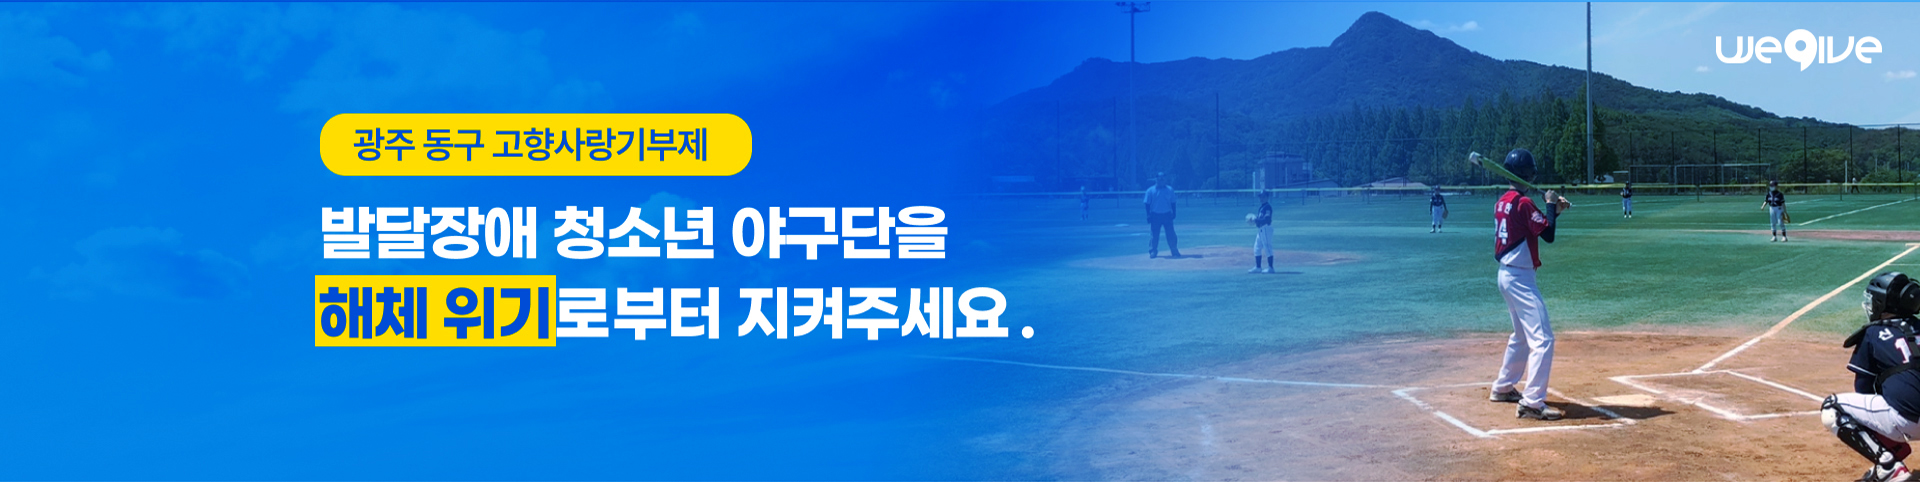 광주 동구 고향사랑기부제 발달장애 청소년 야구단을 해체 위기로부터 지켜주세요.